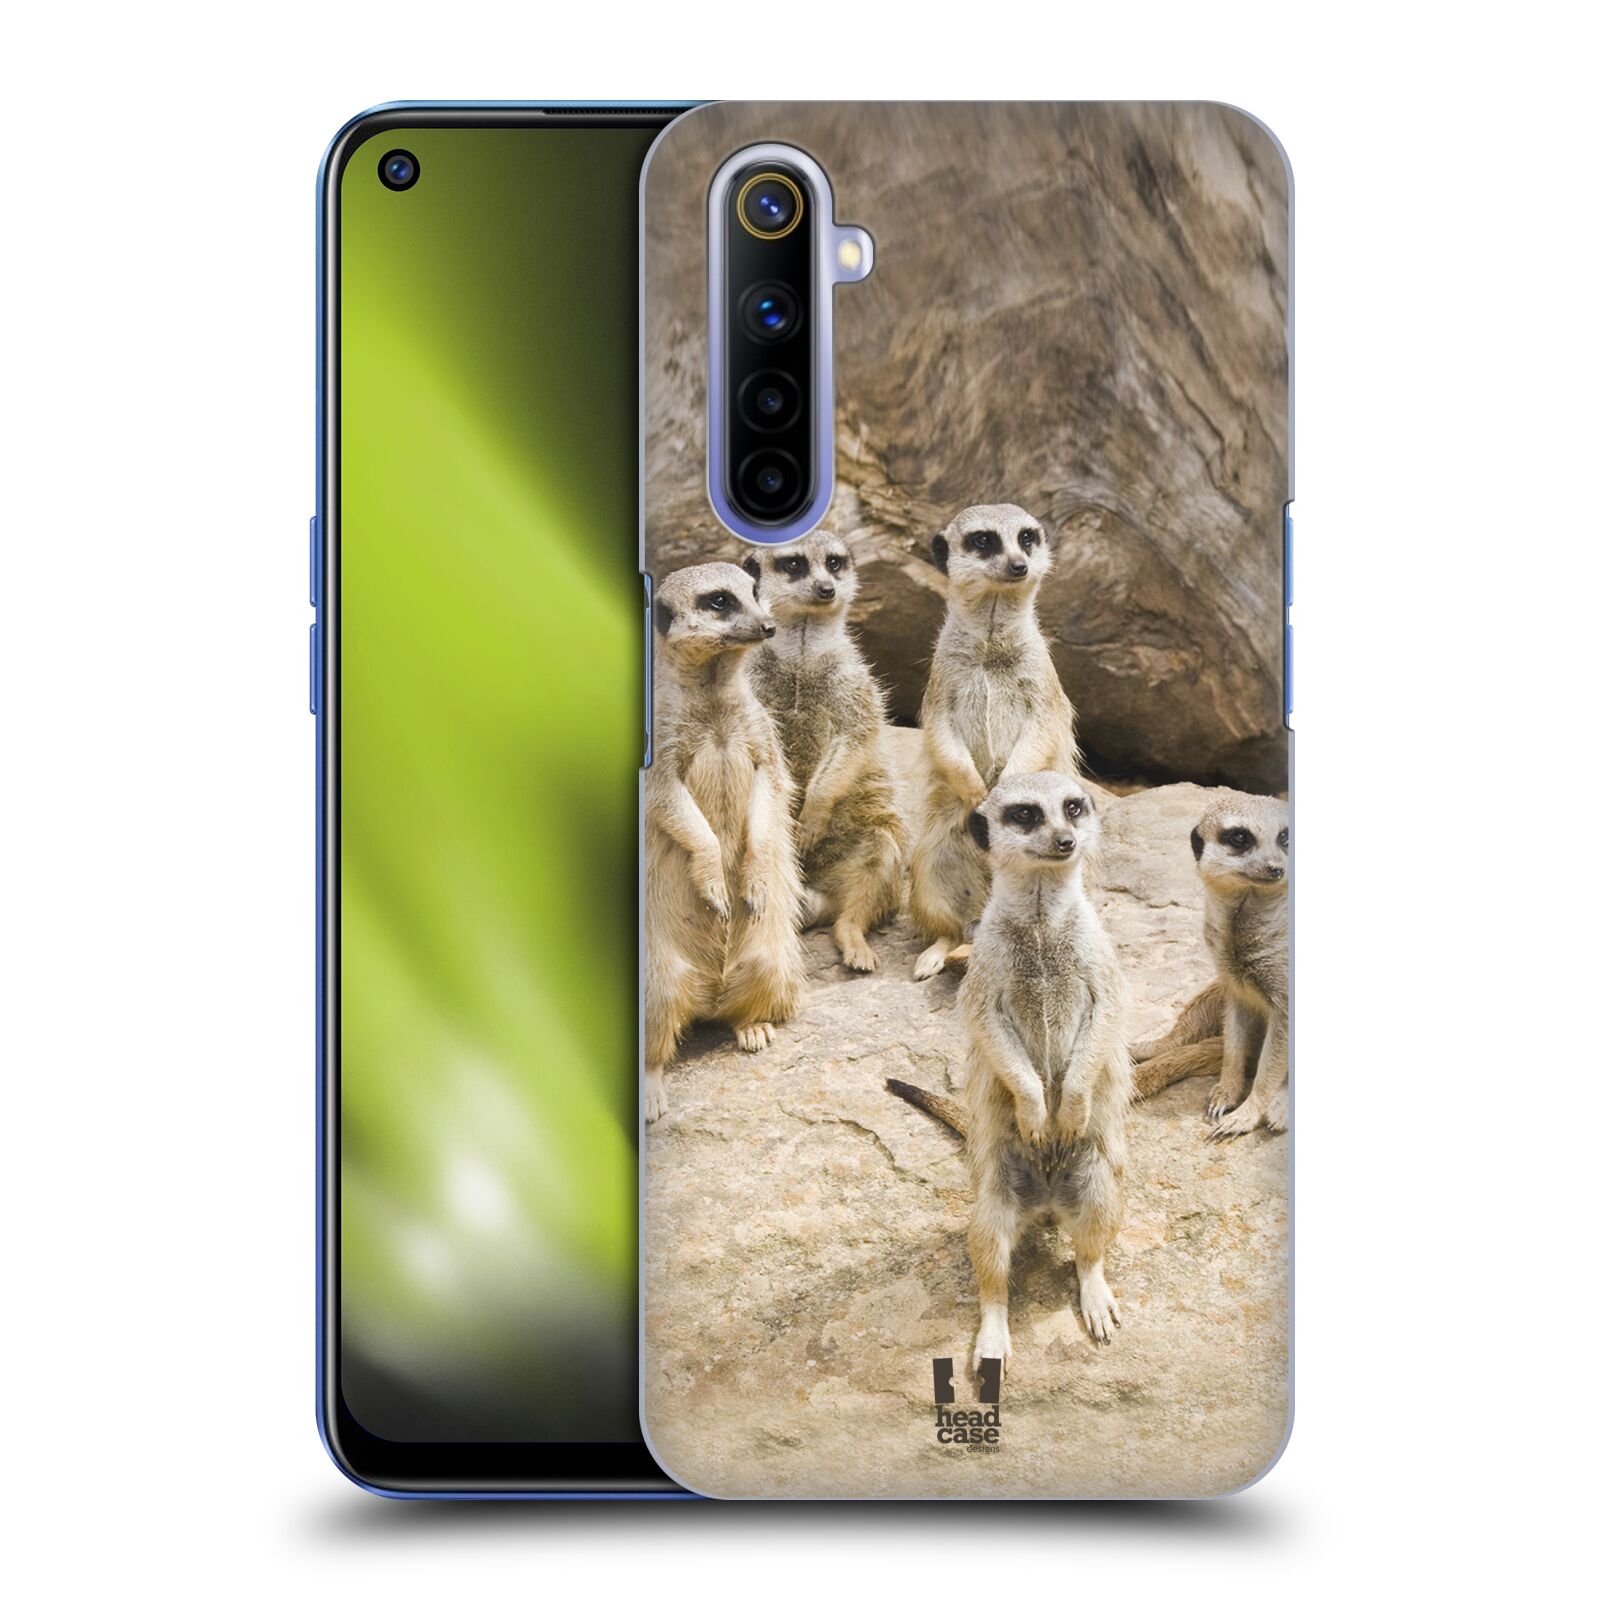 Zadní obal pro mobil Realme 6 - HEAD CASE - Svět zvířat roztomilé surikaty